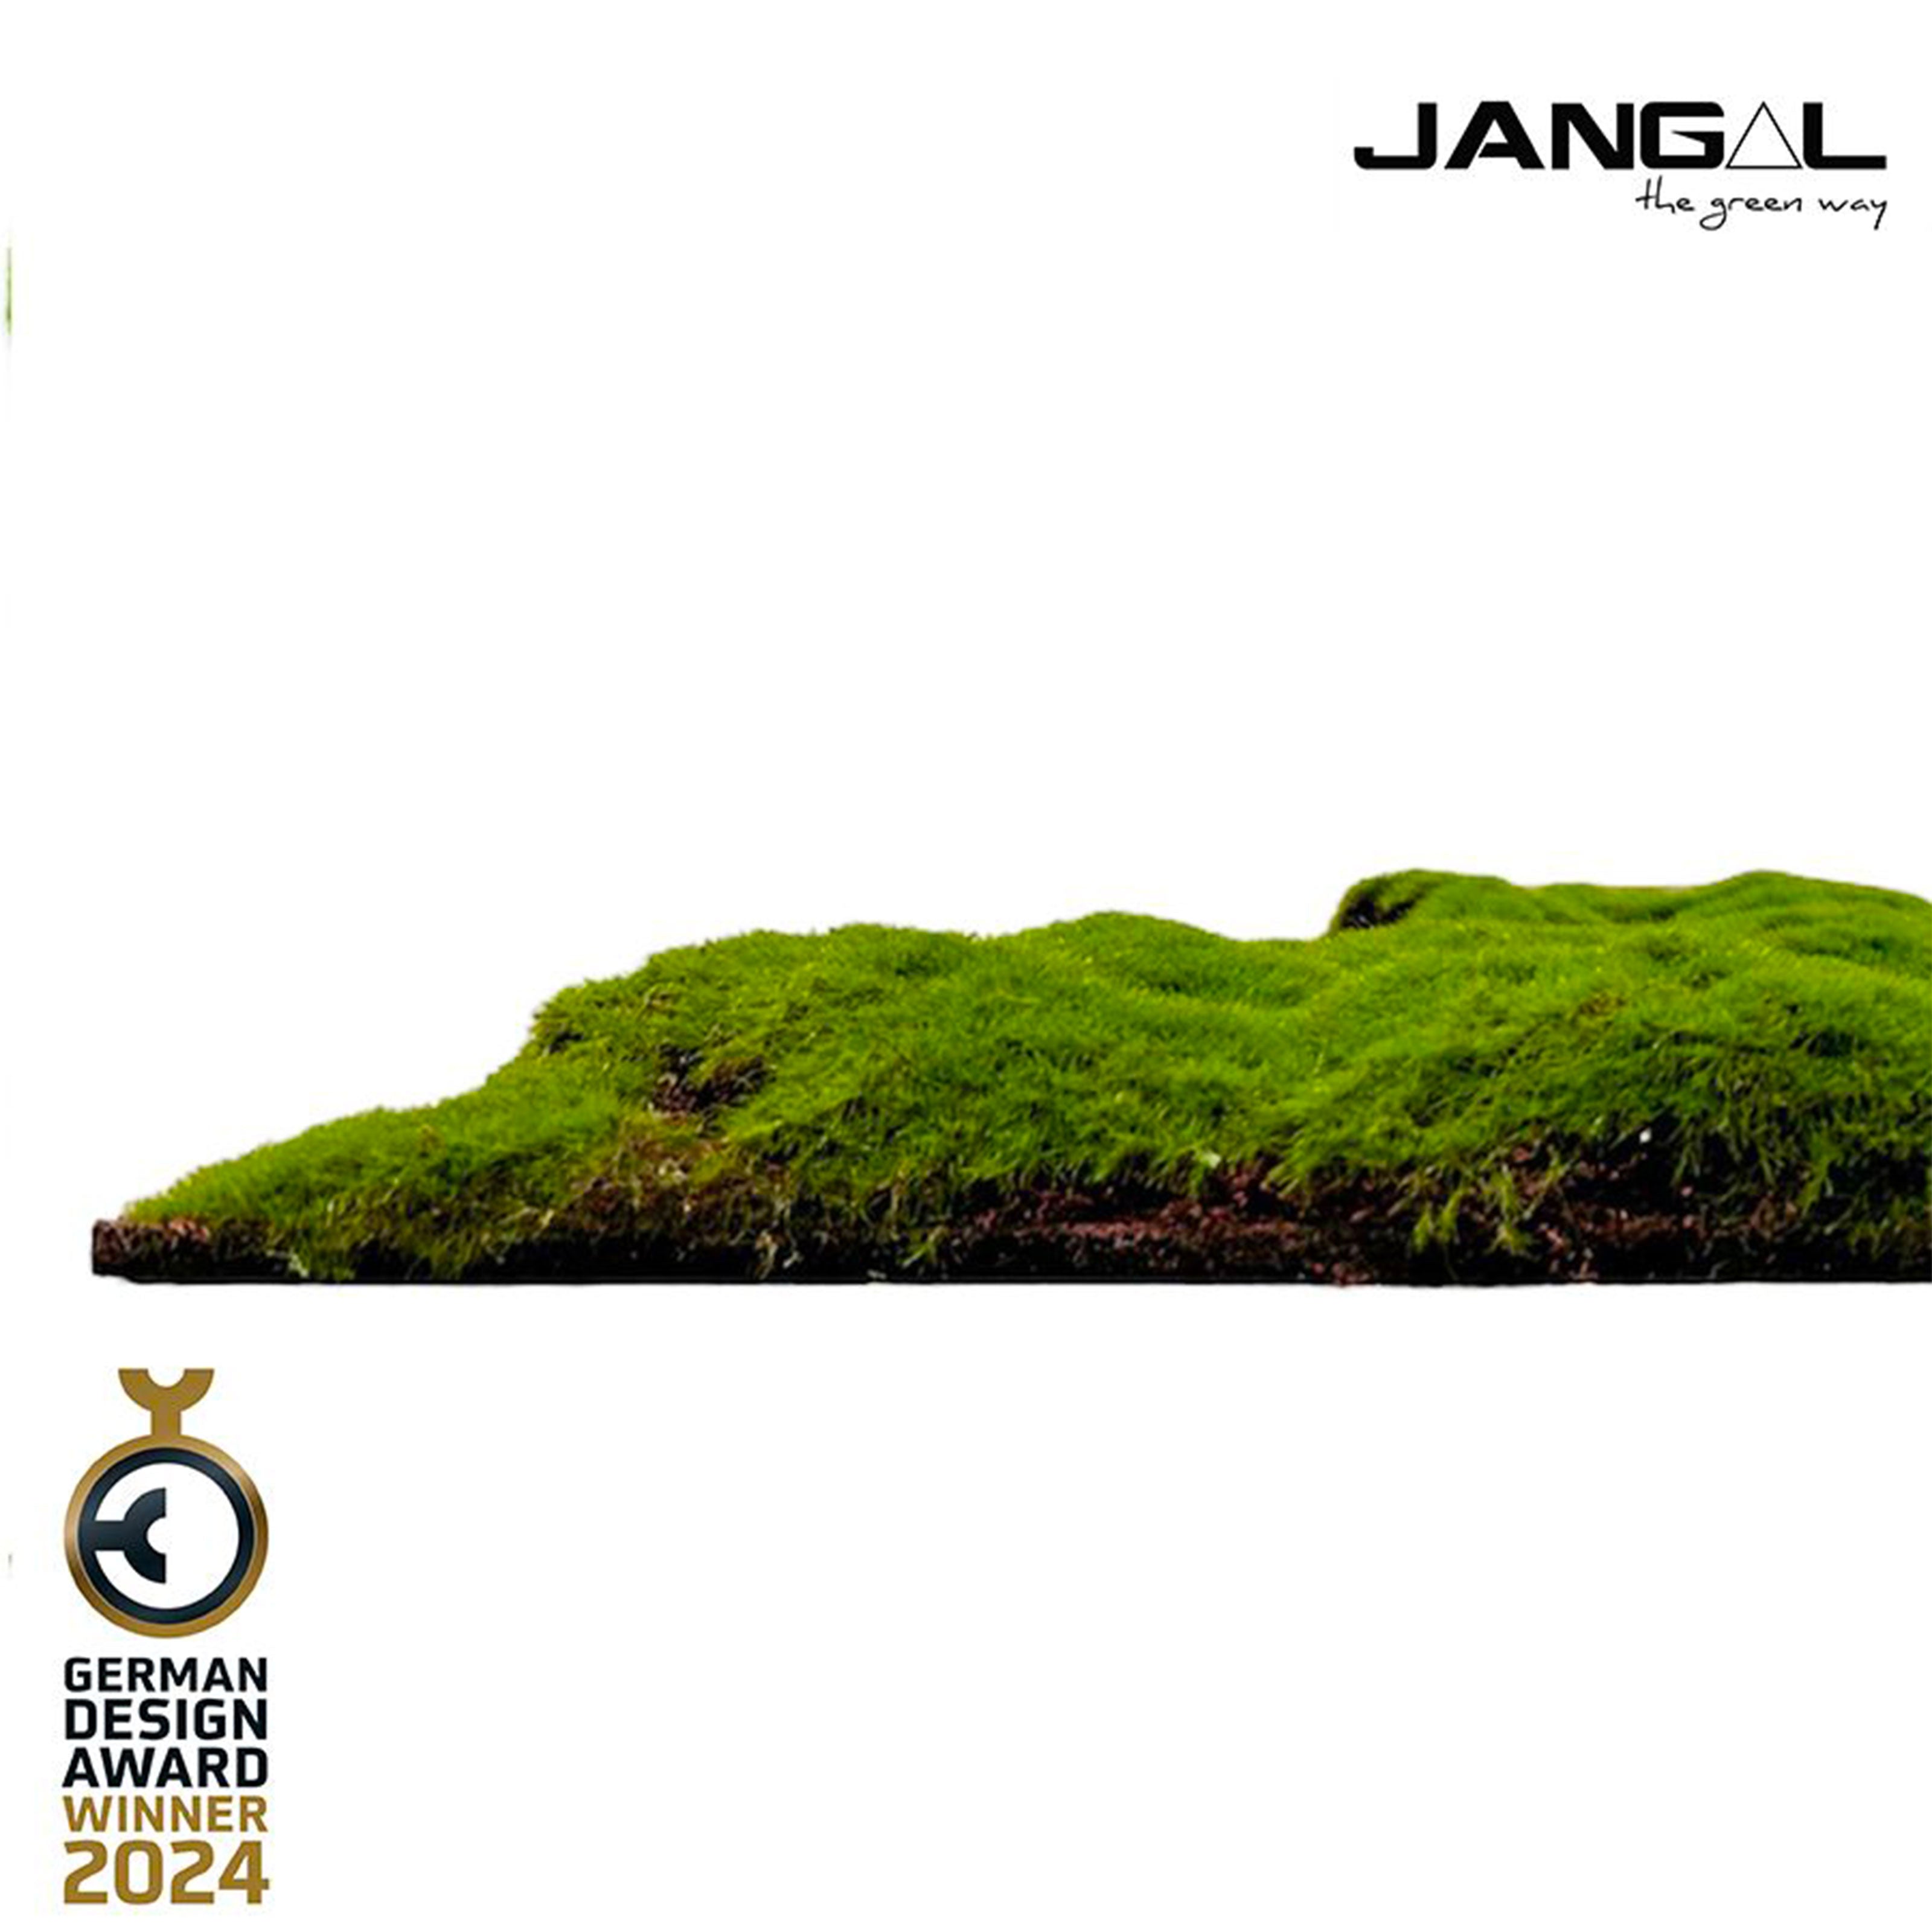 JANGAL Pannelli acustici Modulabili in FLORA sintetica ULTRAREALISTICA 52x52cm mod. FOREST GREEN BULK